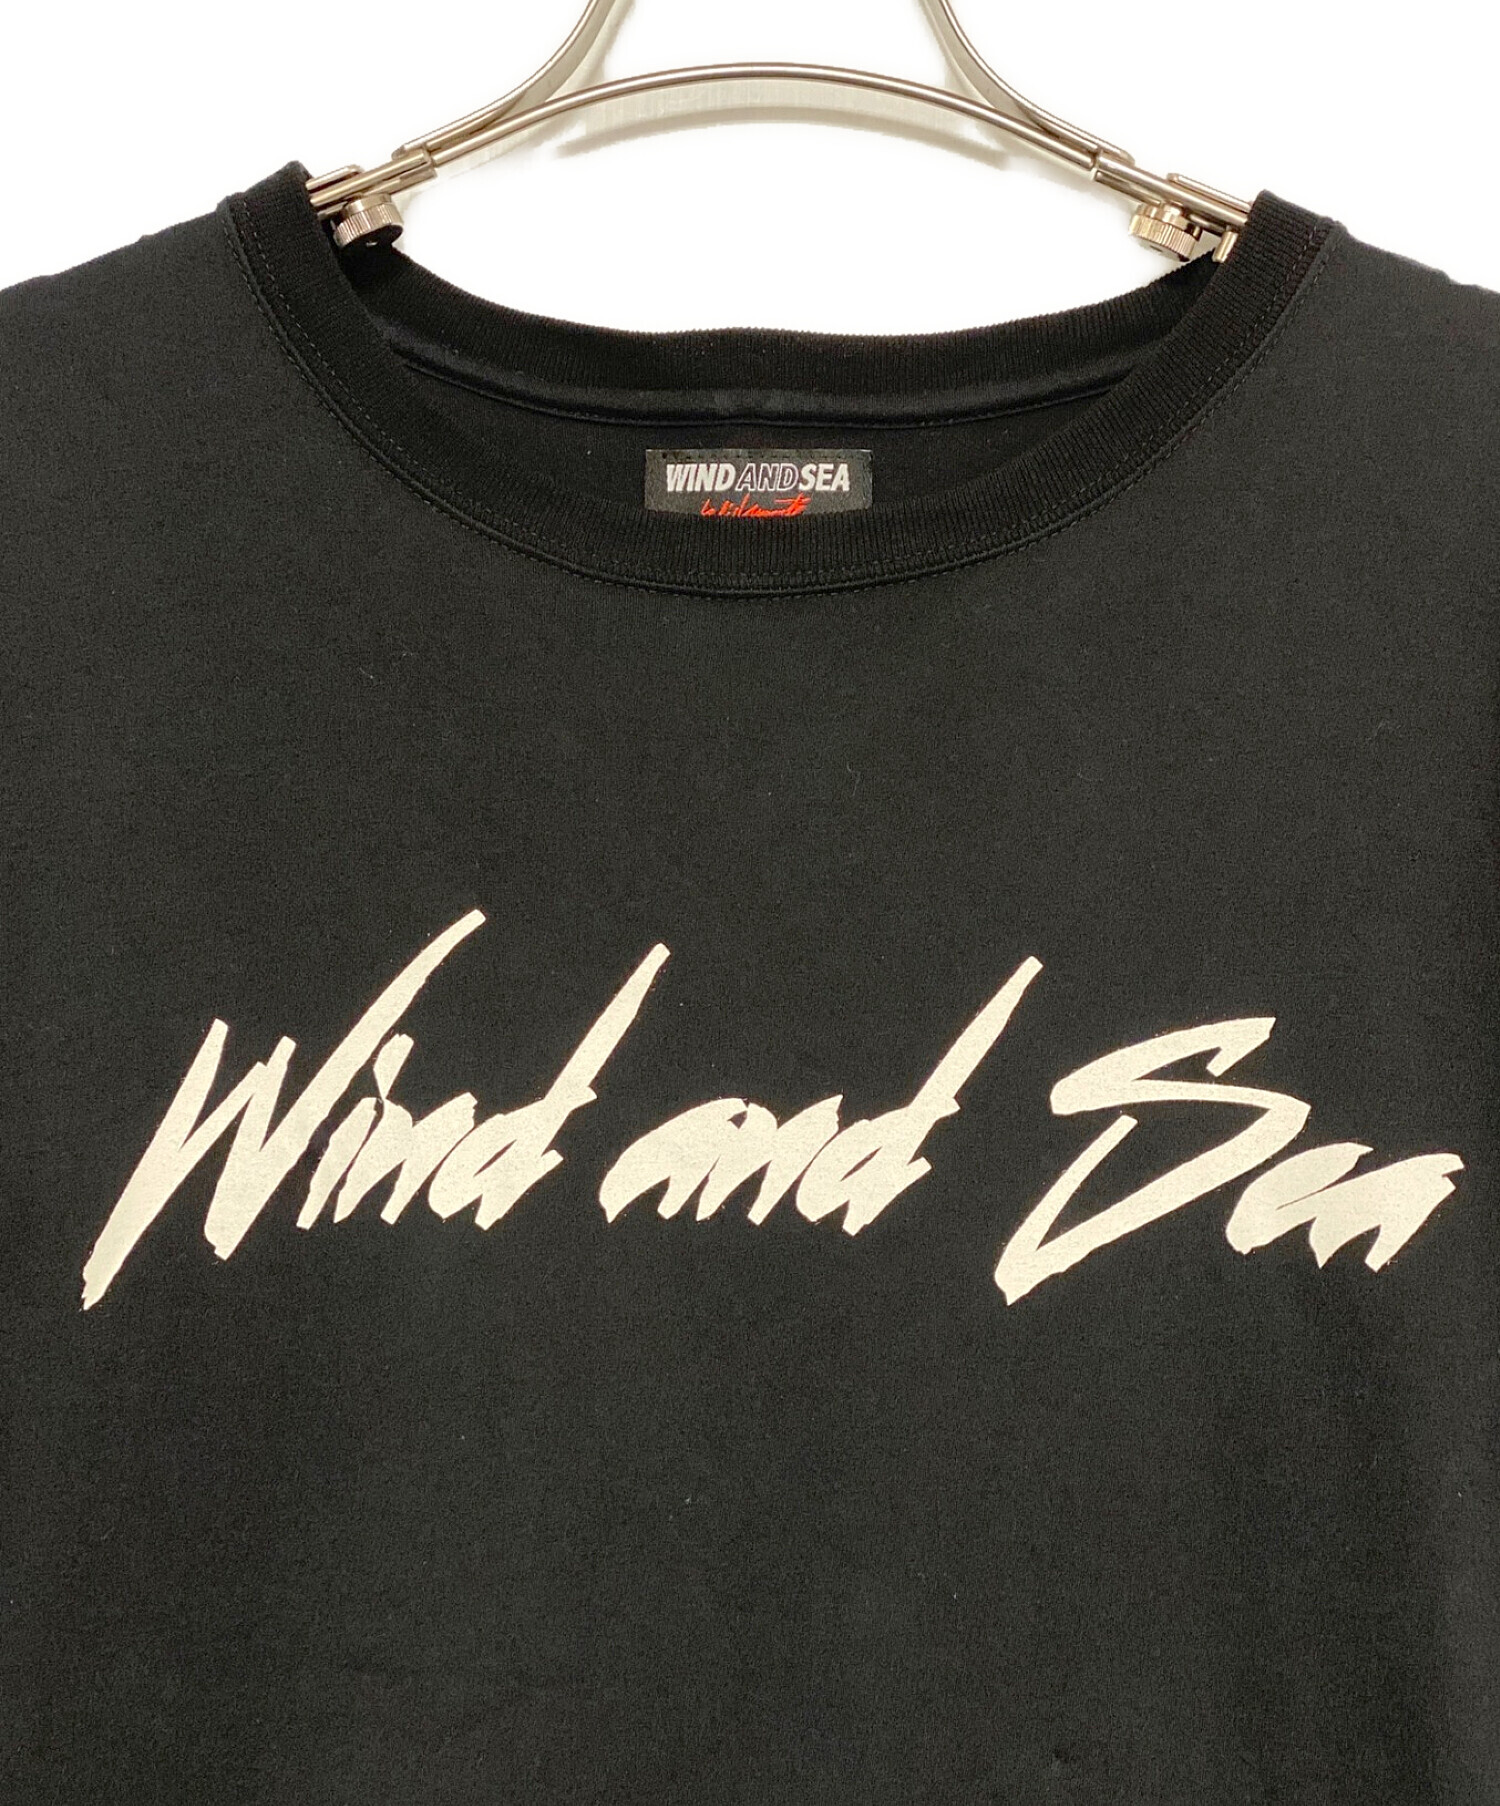 WIND AND SEA (ウインダンシー) WILDSIDE YOHJI YAMAMOTO (ワイルドサイド ヨウジ ヤマモト)  Signature-style logo Long Sleeve T-shirt ブラック サイズ:3